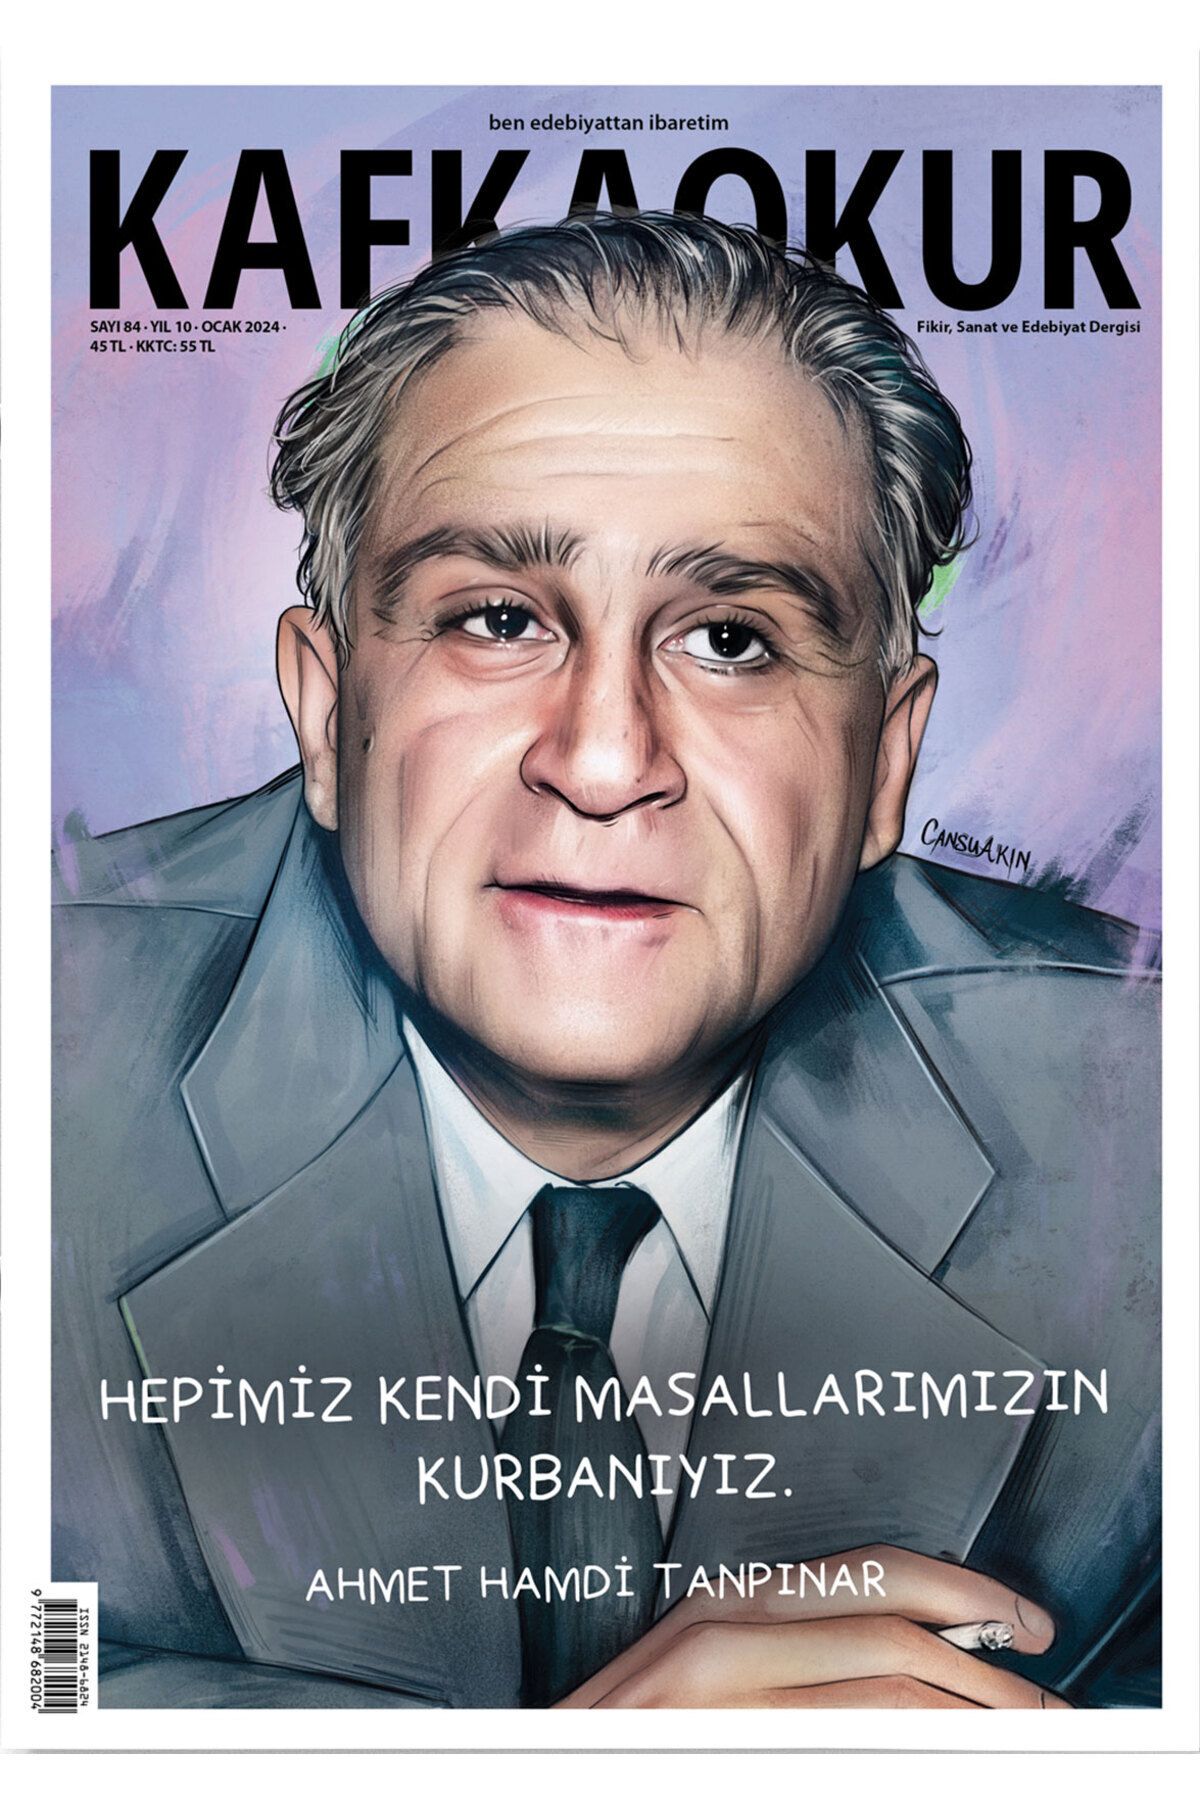 KafkaOkur Dergisi Sayı 84 - Ahmet Hamdi Tanpınar - Ocak 2024